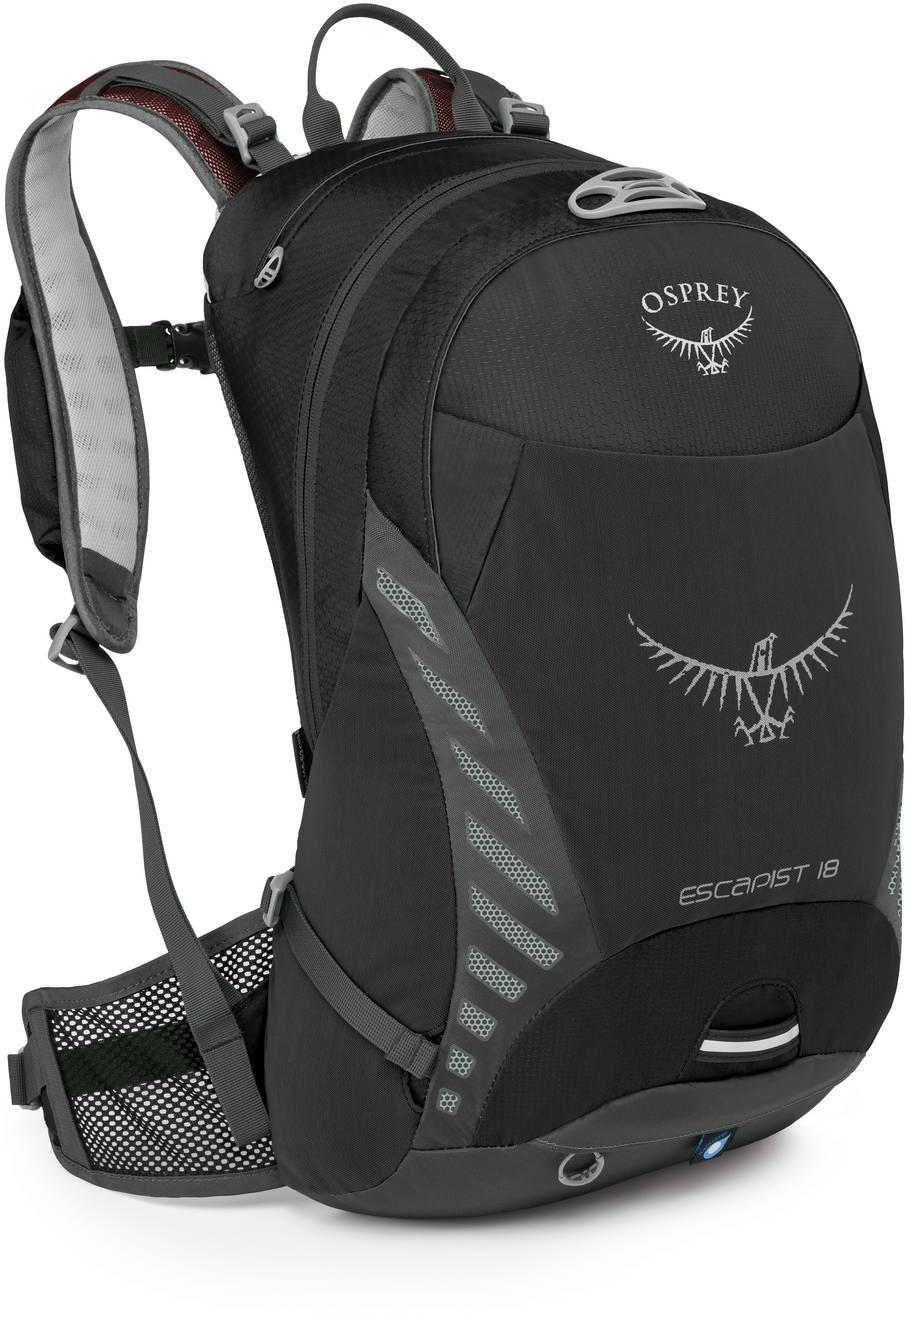 Osprey Escapist 18 Backpack  Black